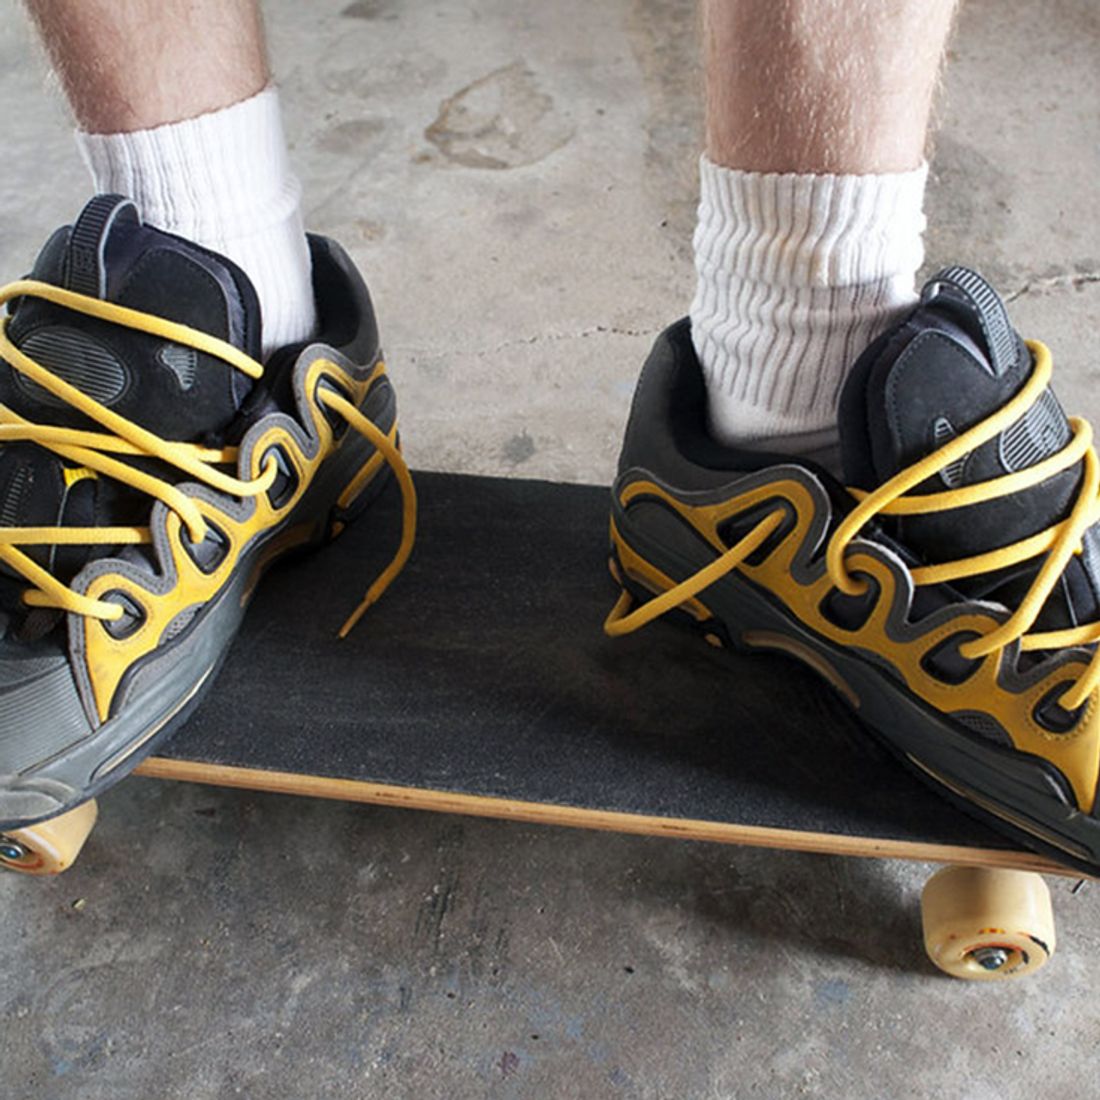 Anesthesie Typisch wenselijk 5 Sneakers That Defined Early-2000s Skateboarding - Sneaker Freaker